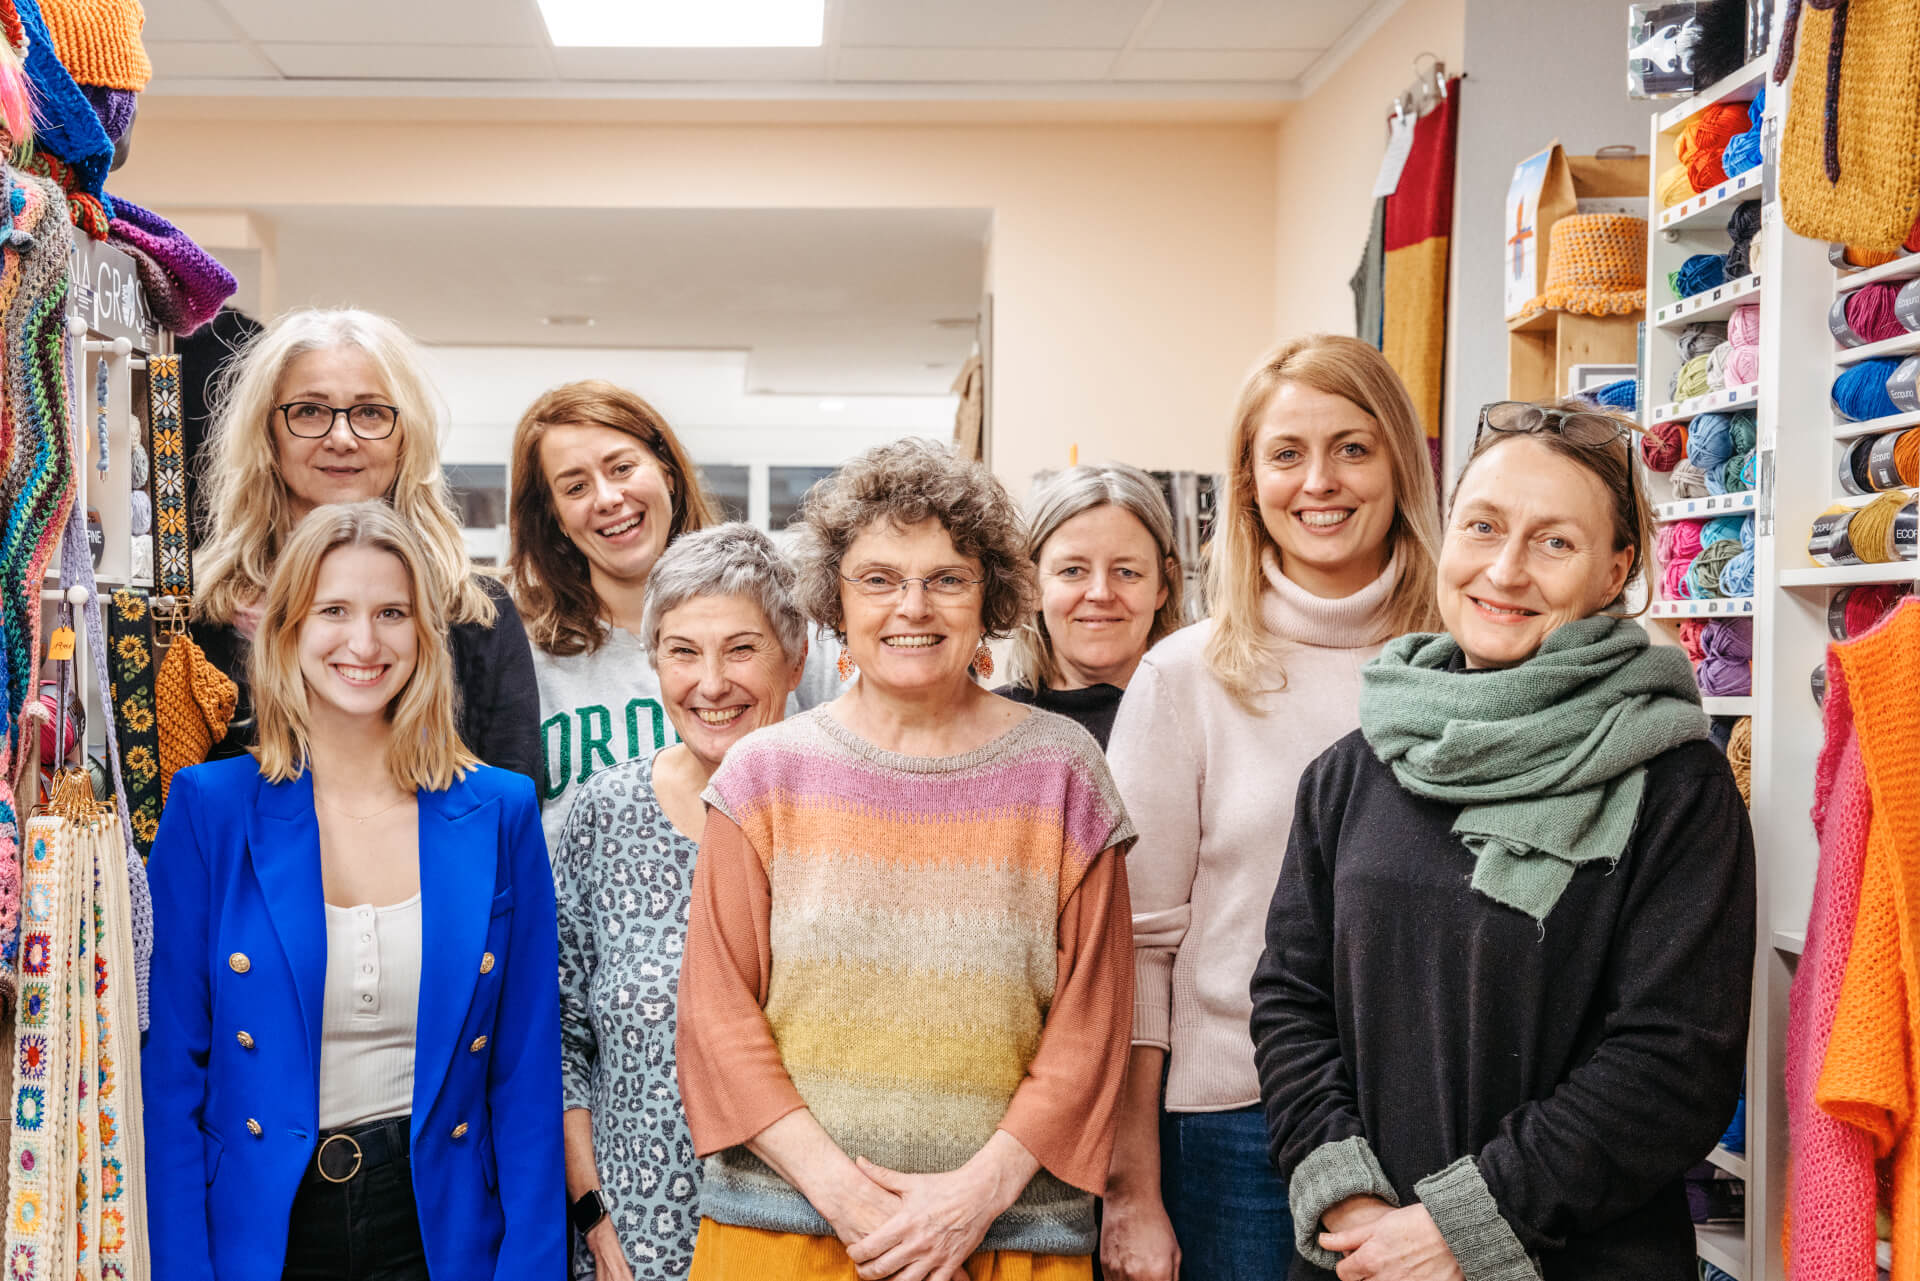 Gruppenbild mit acht Frauen, die Gründungsmitglieder des Vereins "Frauen-Stammtisch Innenstadt"